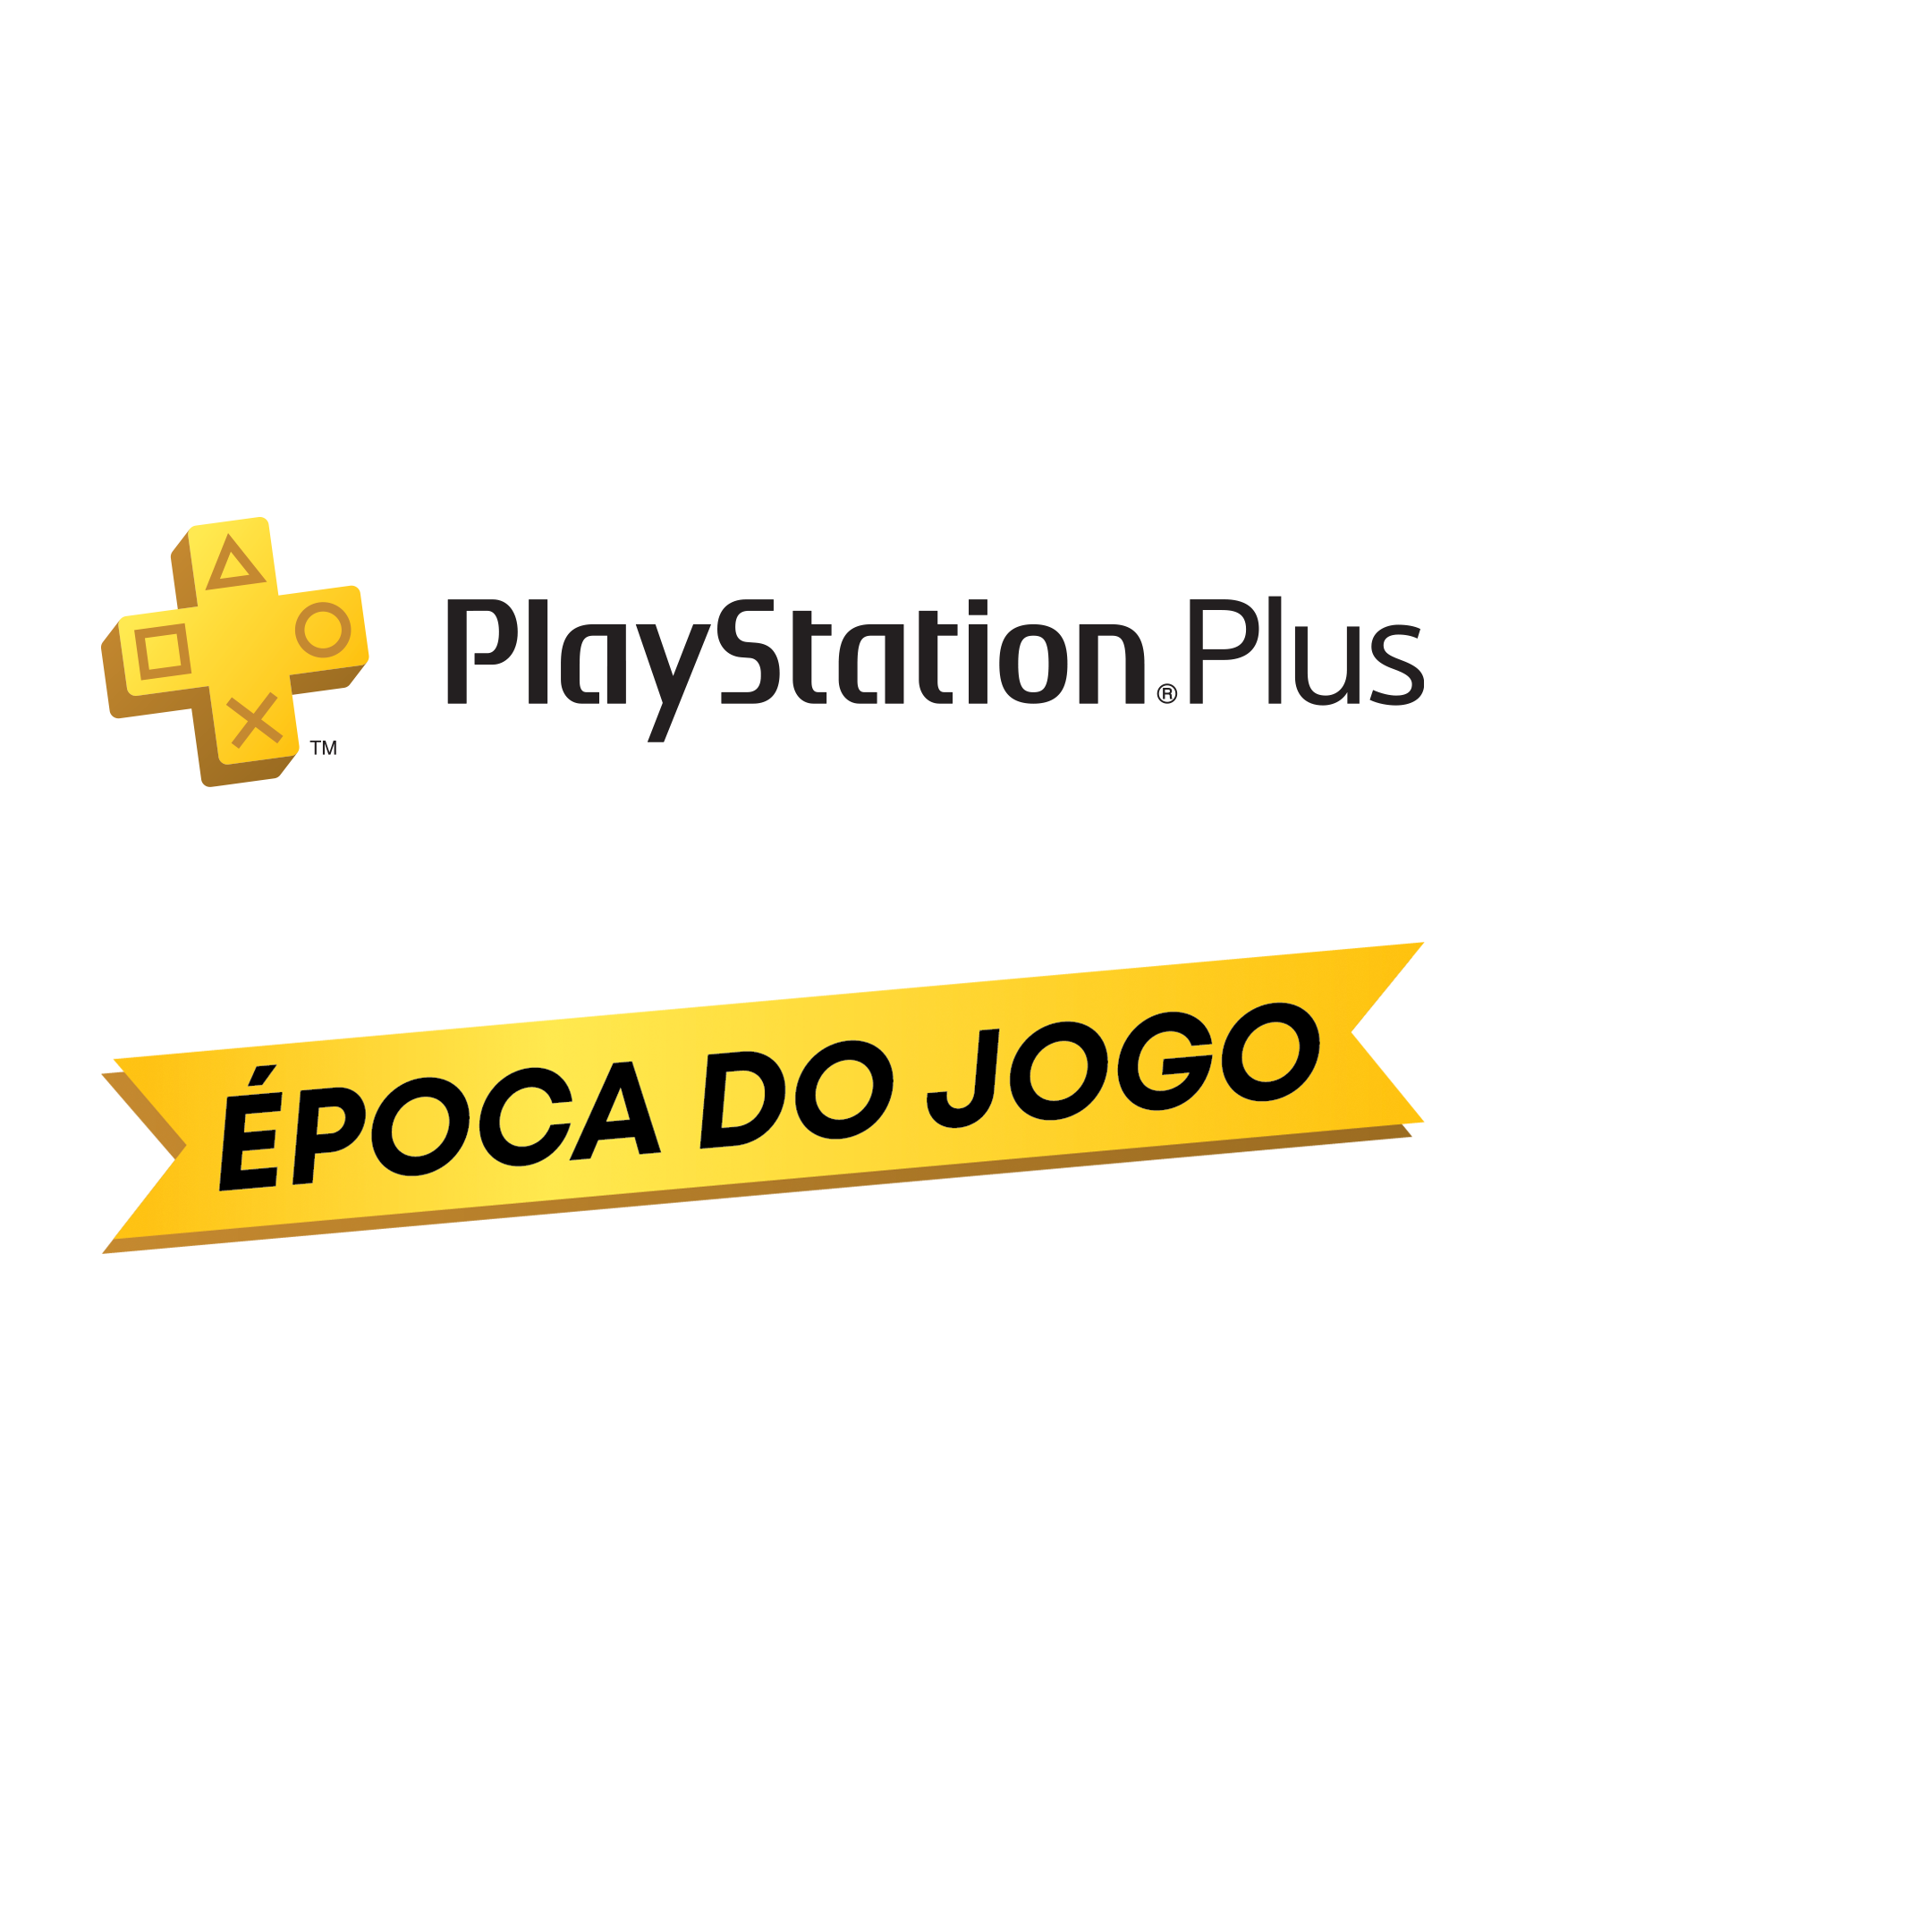 PlayStation Portugal - Queres desconto de 30€ nas subscrições de 12 meses  do PlayStation®Plus? 1 ano de Essential por 29,99 ou de Premium por 89,99€?  Então aproveita: até dia 20/12 na PlayStation